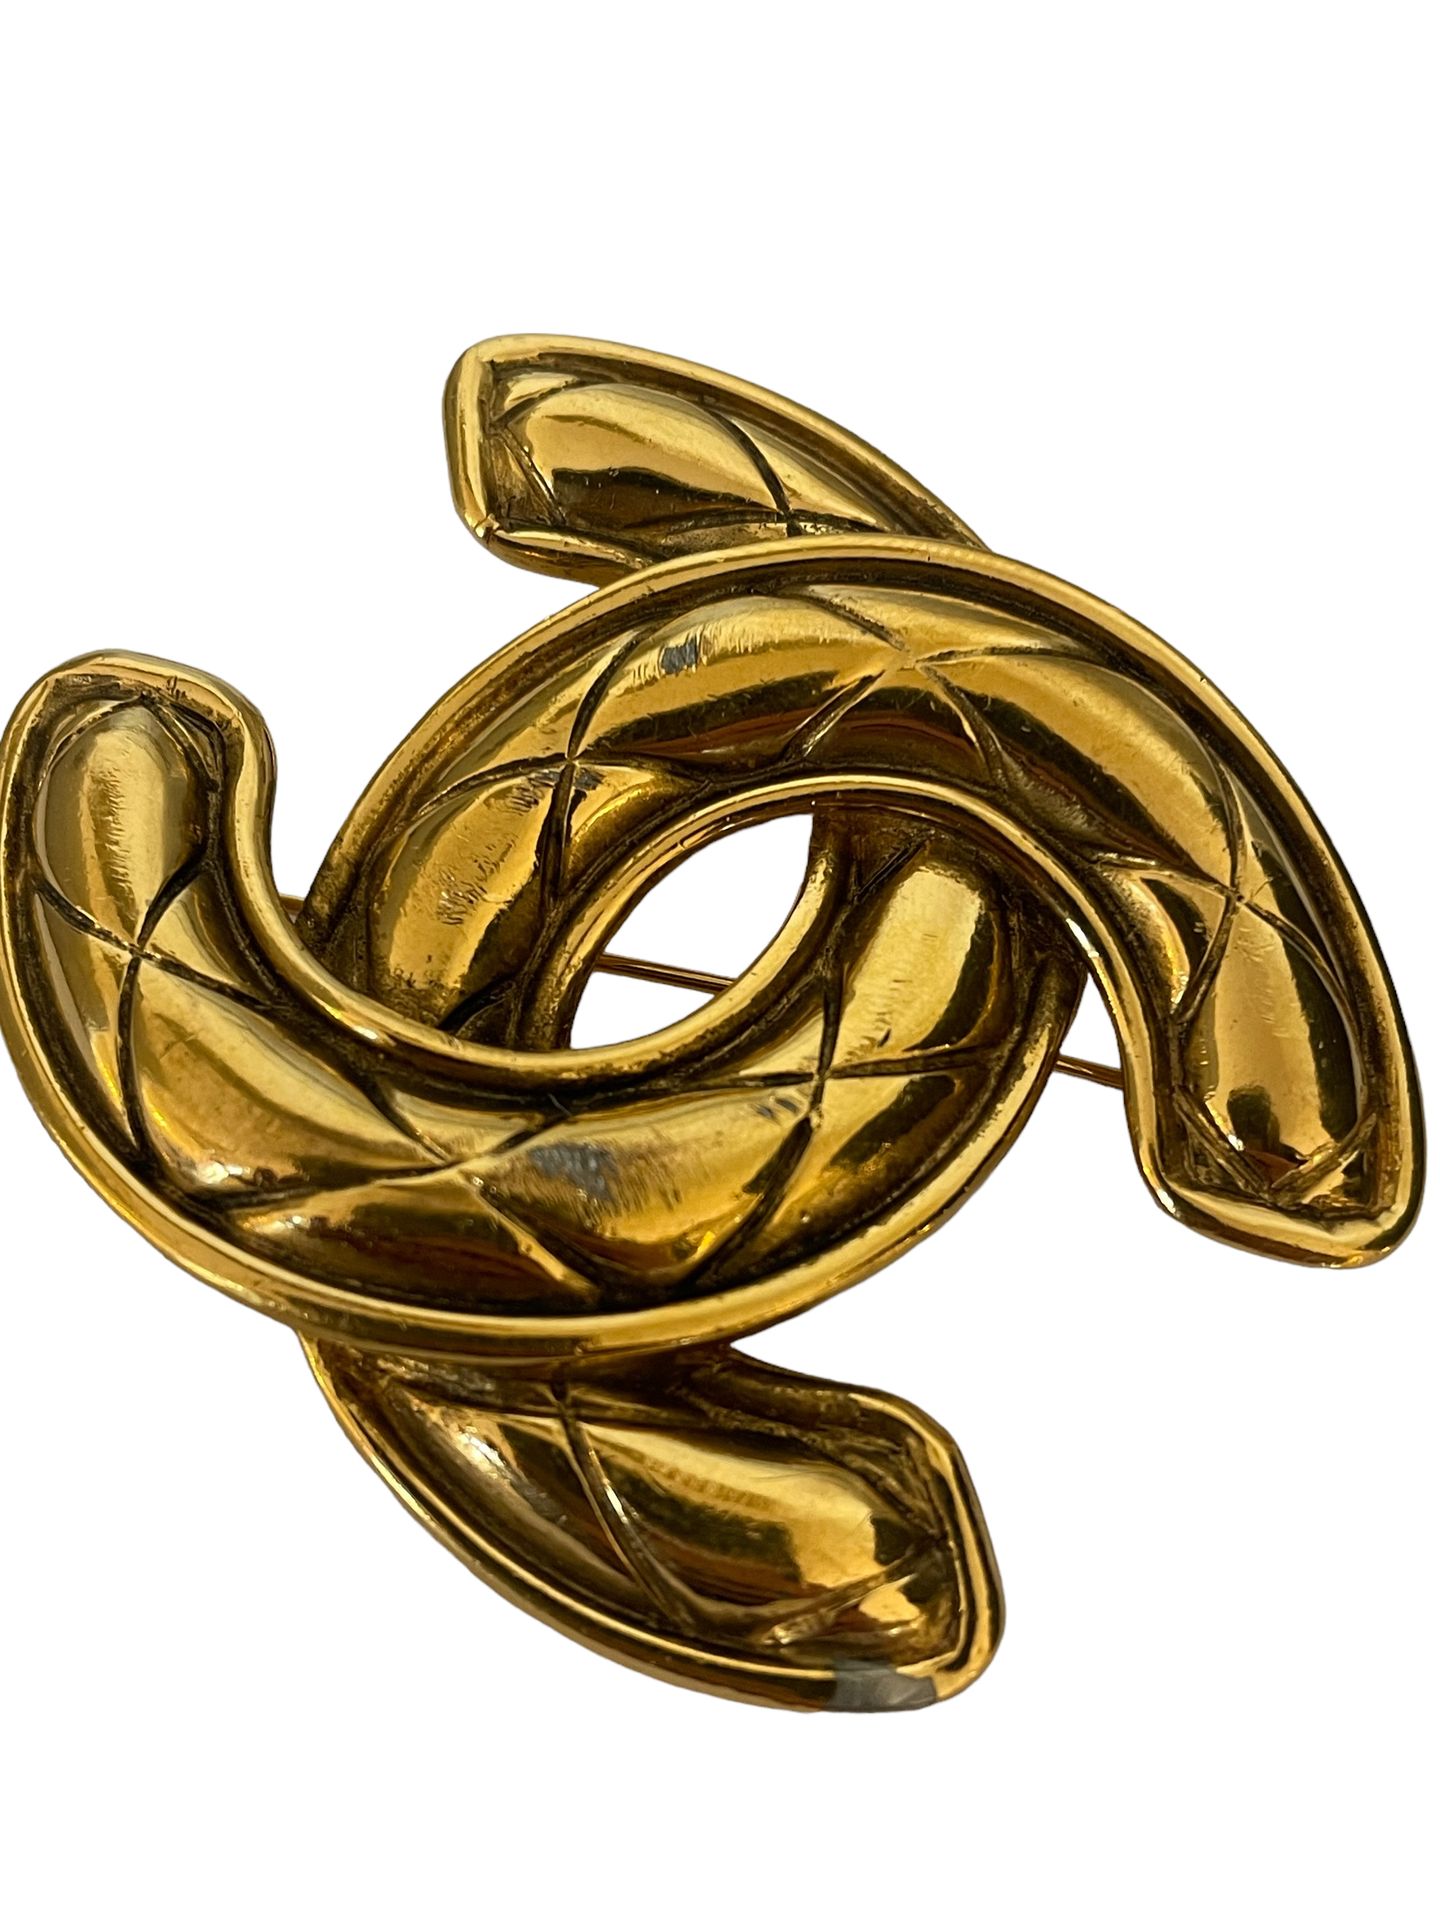 Null CHANEL
Grande spilla in metallo dorato con il logo dell'azienda.
5 x 6 cm
(&hellip;